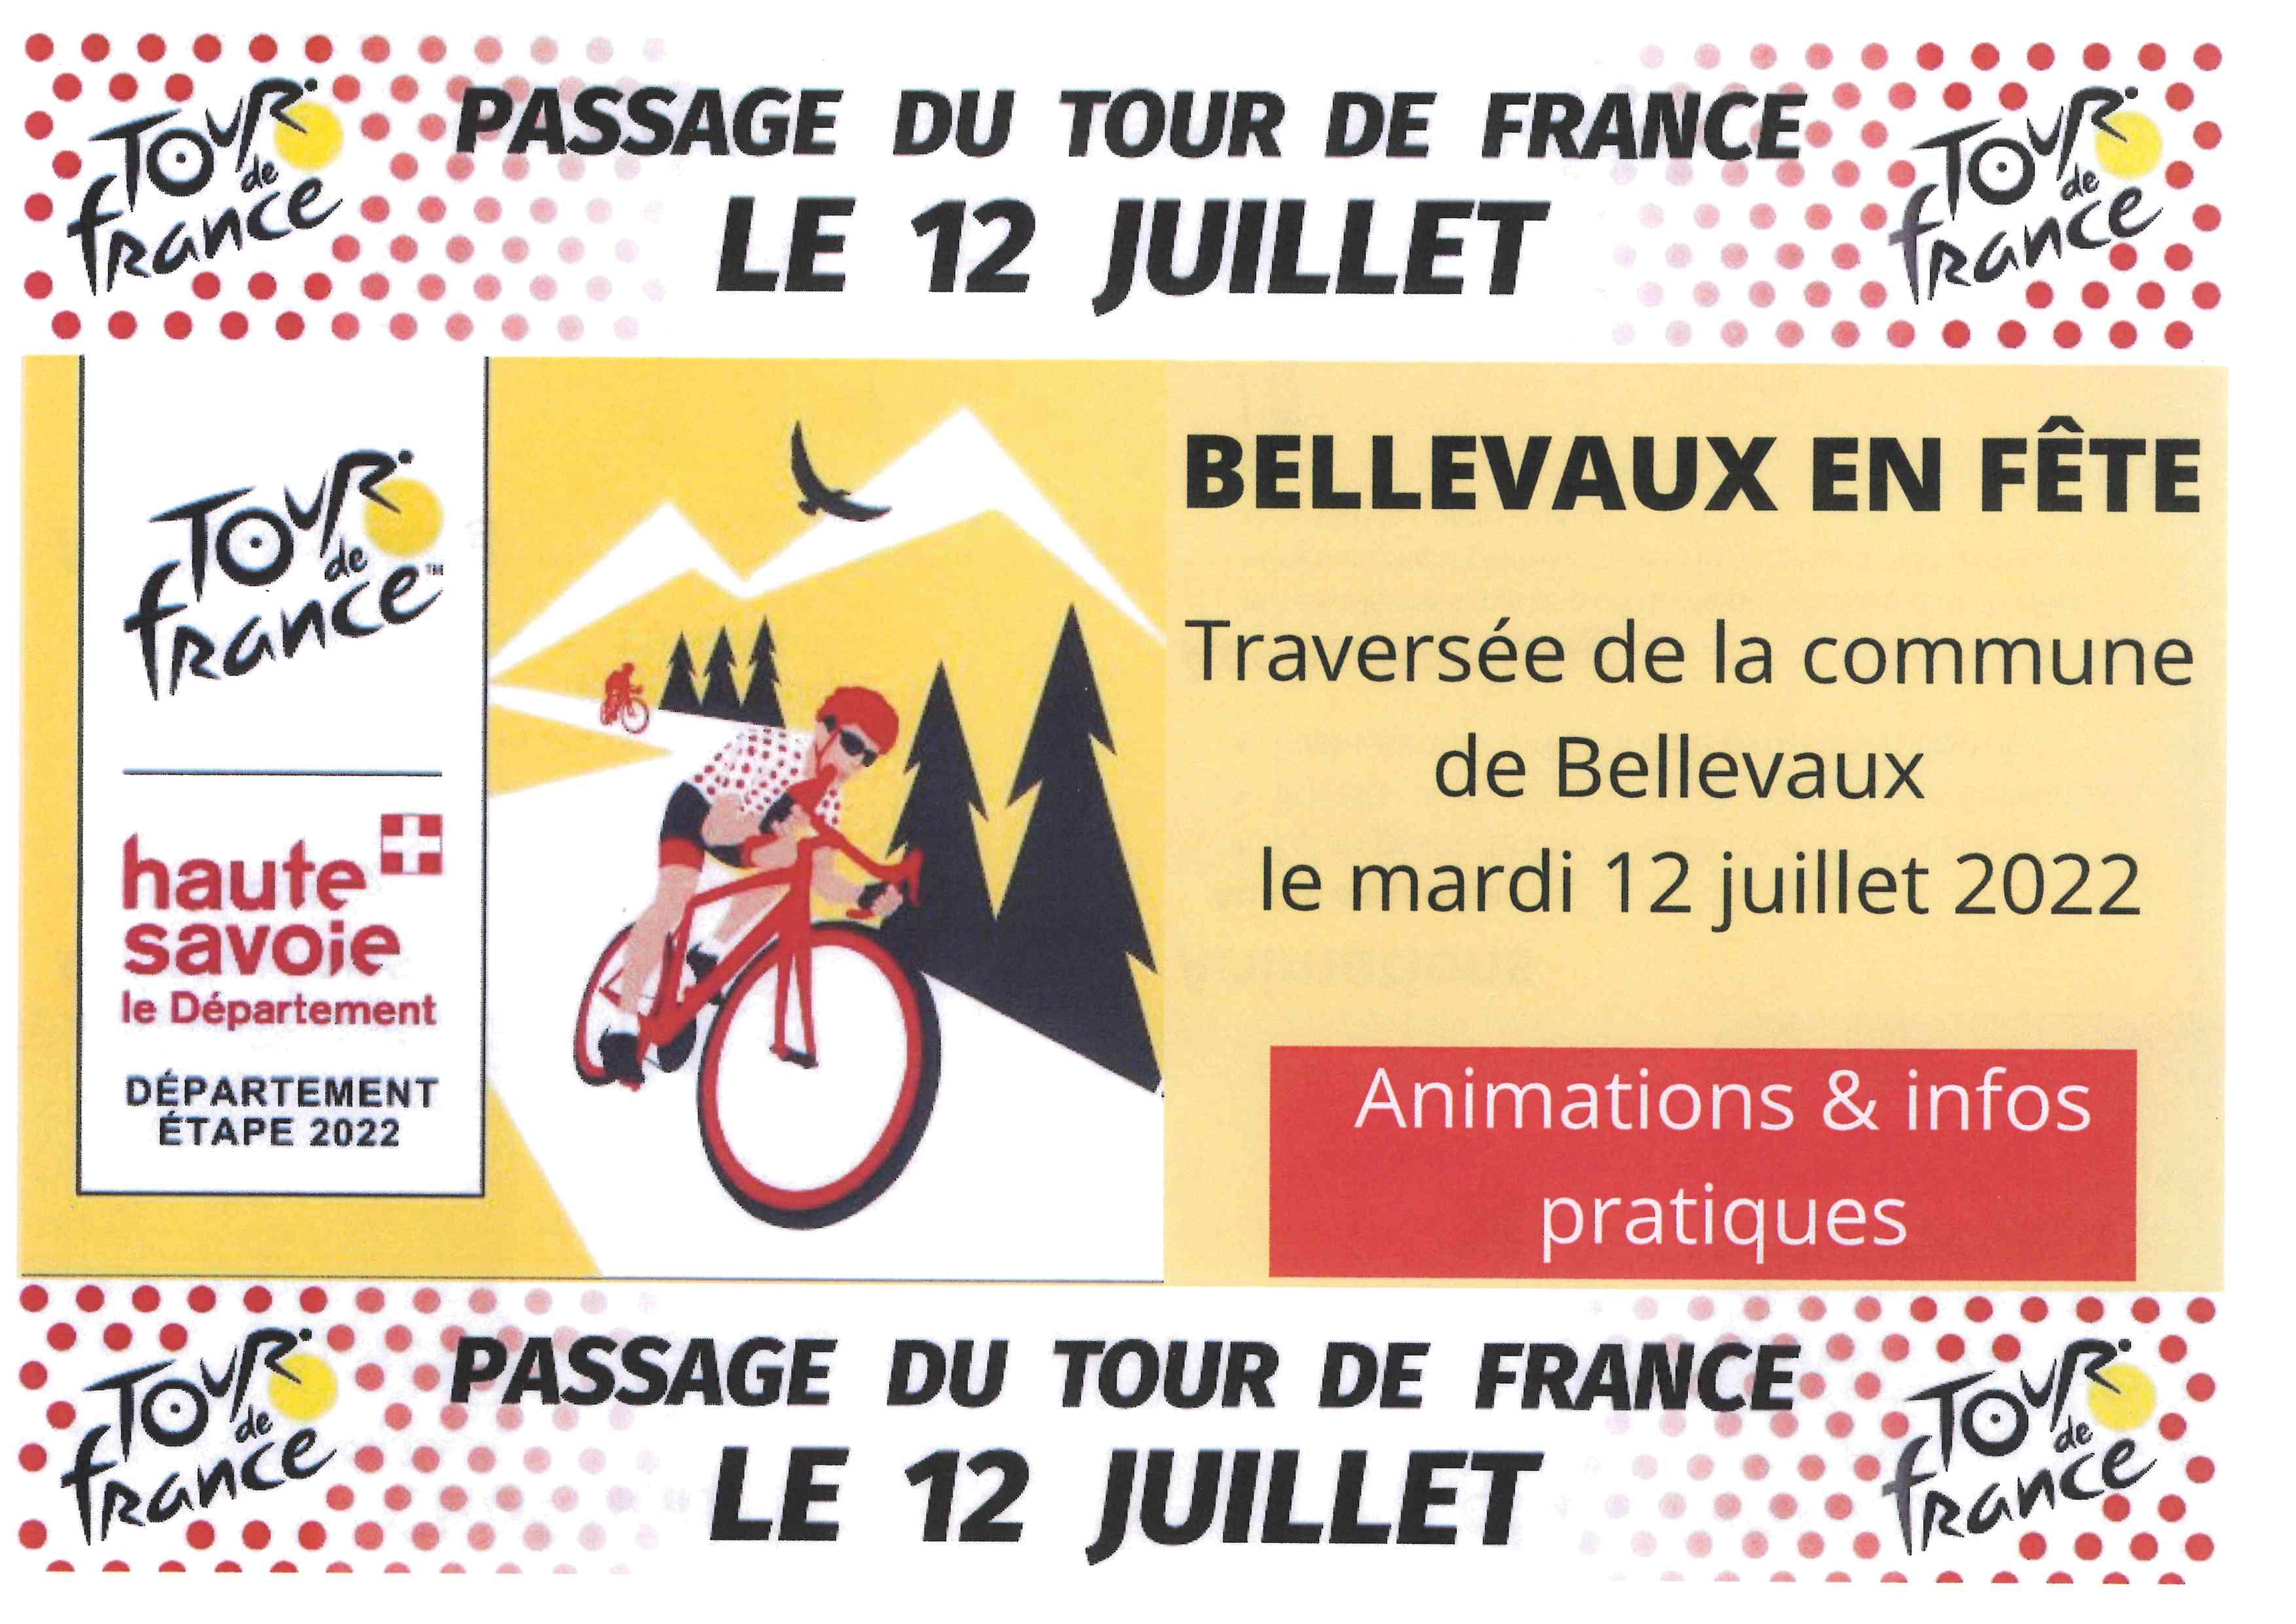 Image de couverture - Tour de France 2022 Bellevaux